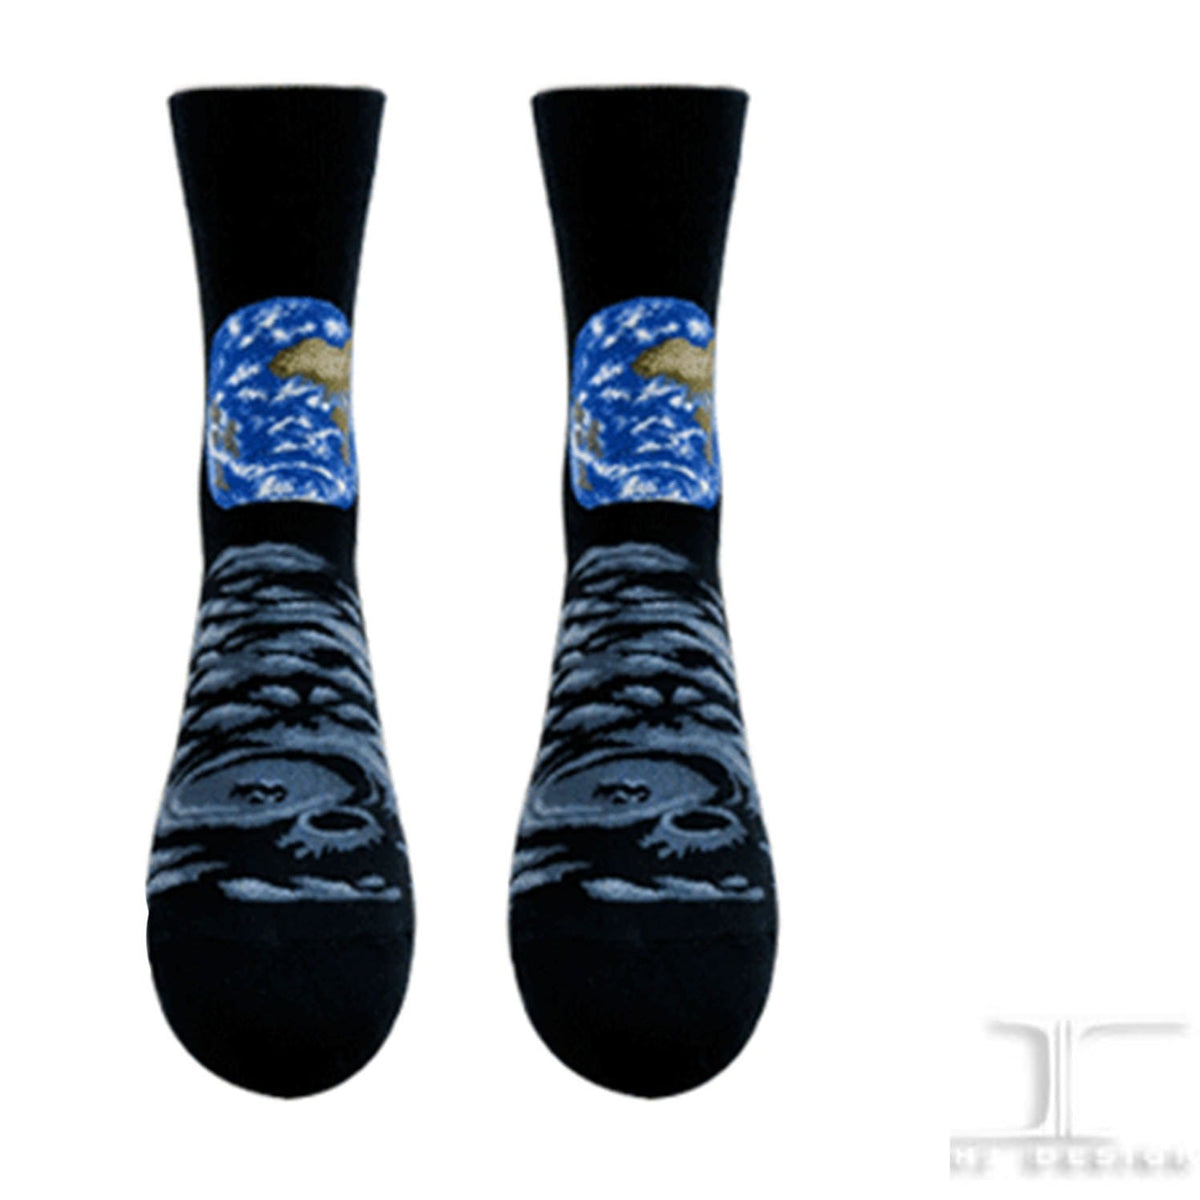 Earth and Moon Socks Unisex Crew Sock Medium / black